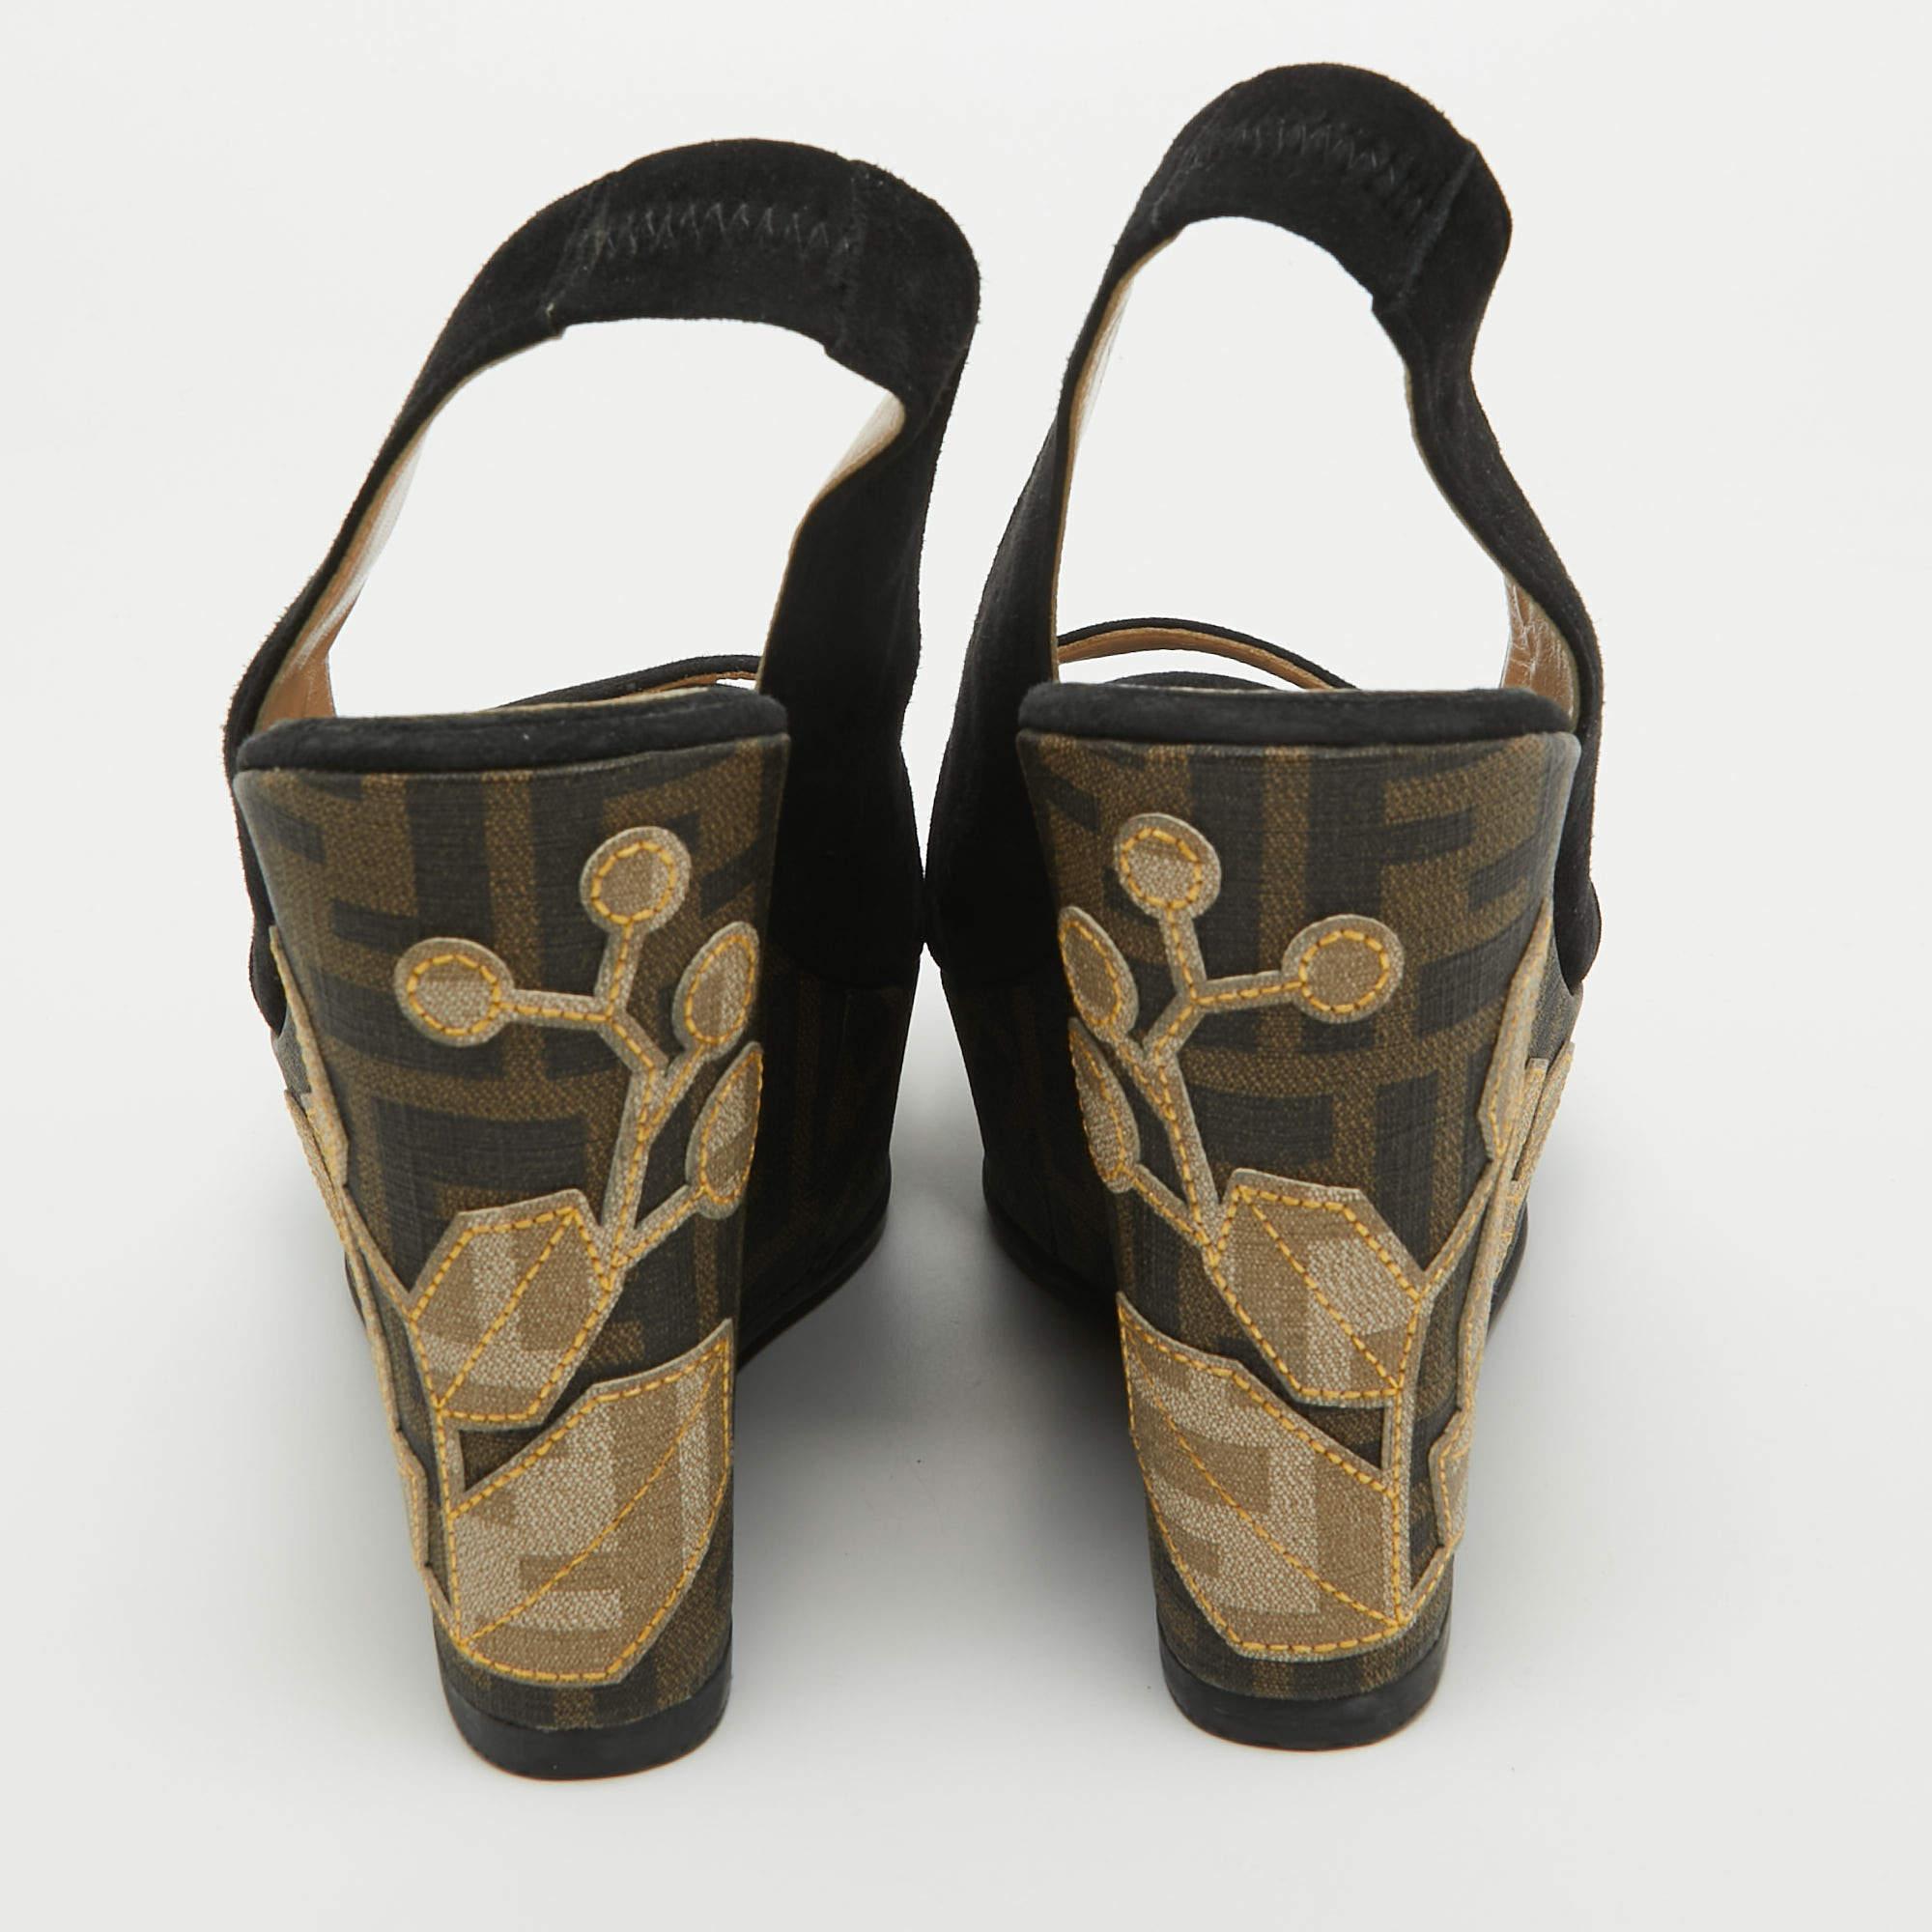 Fendi Black Suede Zucca Appliqued Wedge Platform Slingback Sandals Size 38.5 1